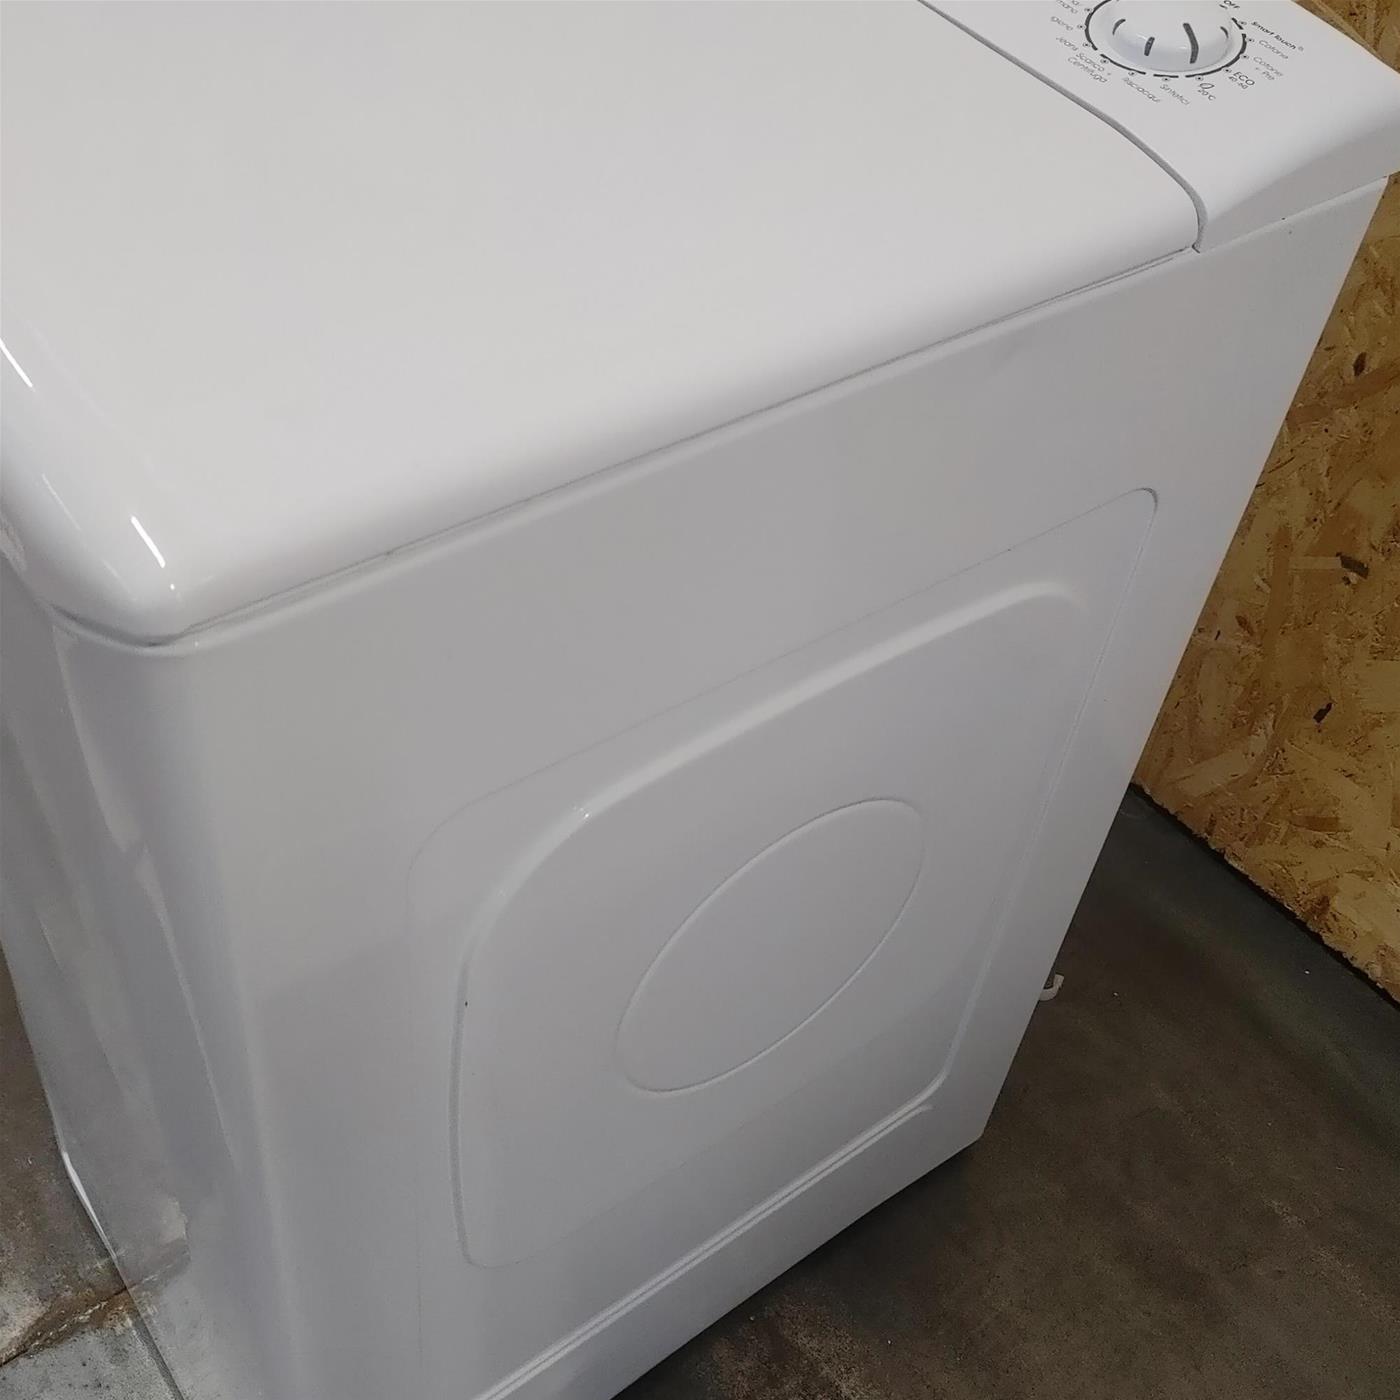 Candy Smart CSTG 28TE/1-11 lavatrice Caricamento dall'alto 8 kg 1200 Giri/min Bianco